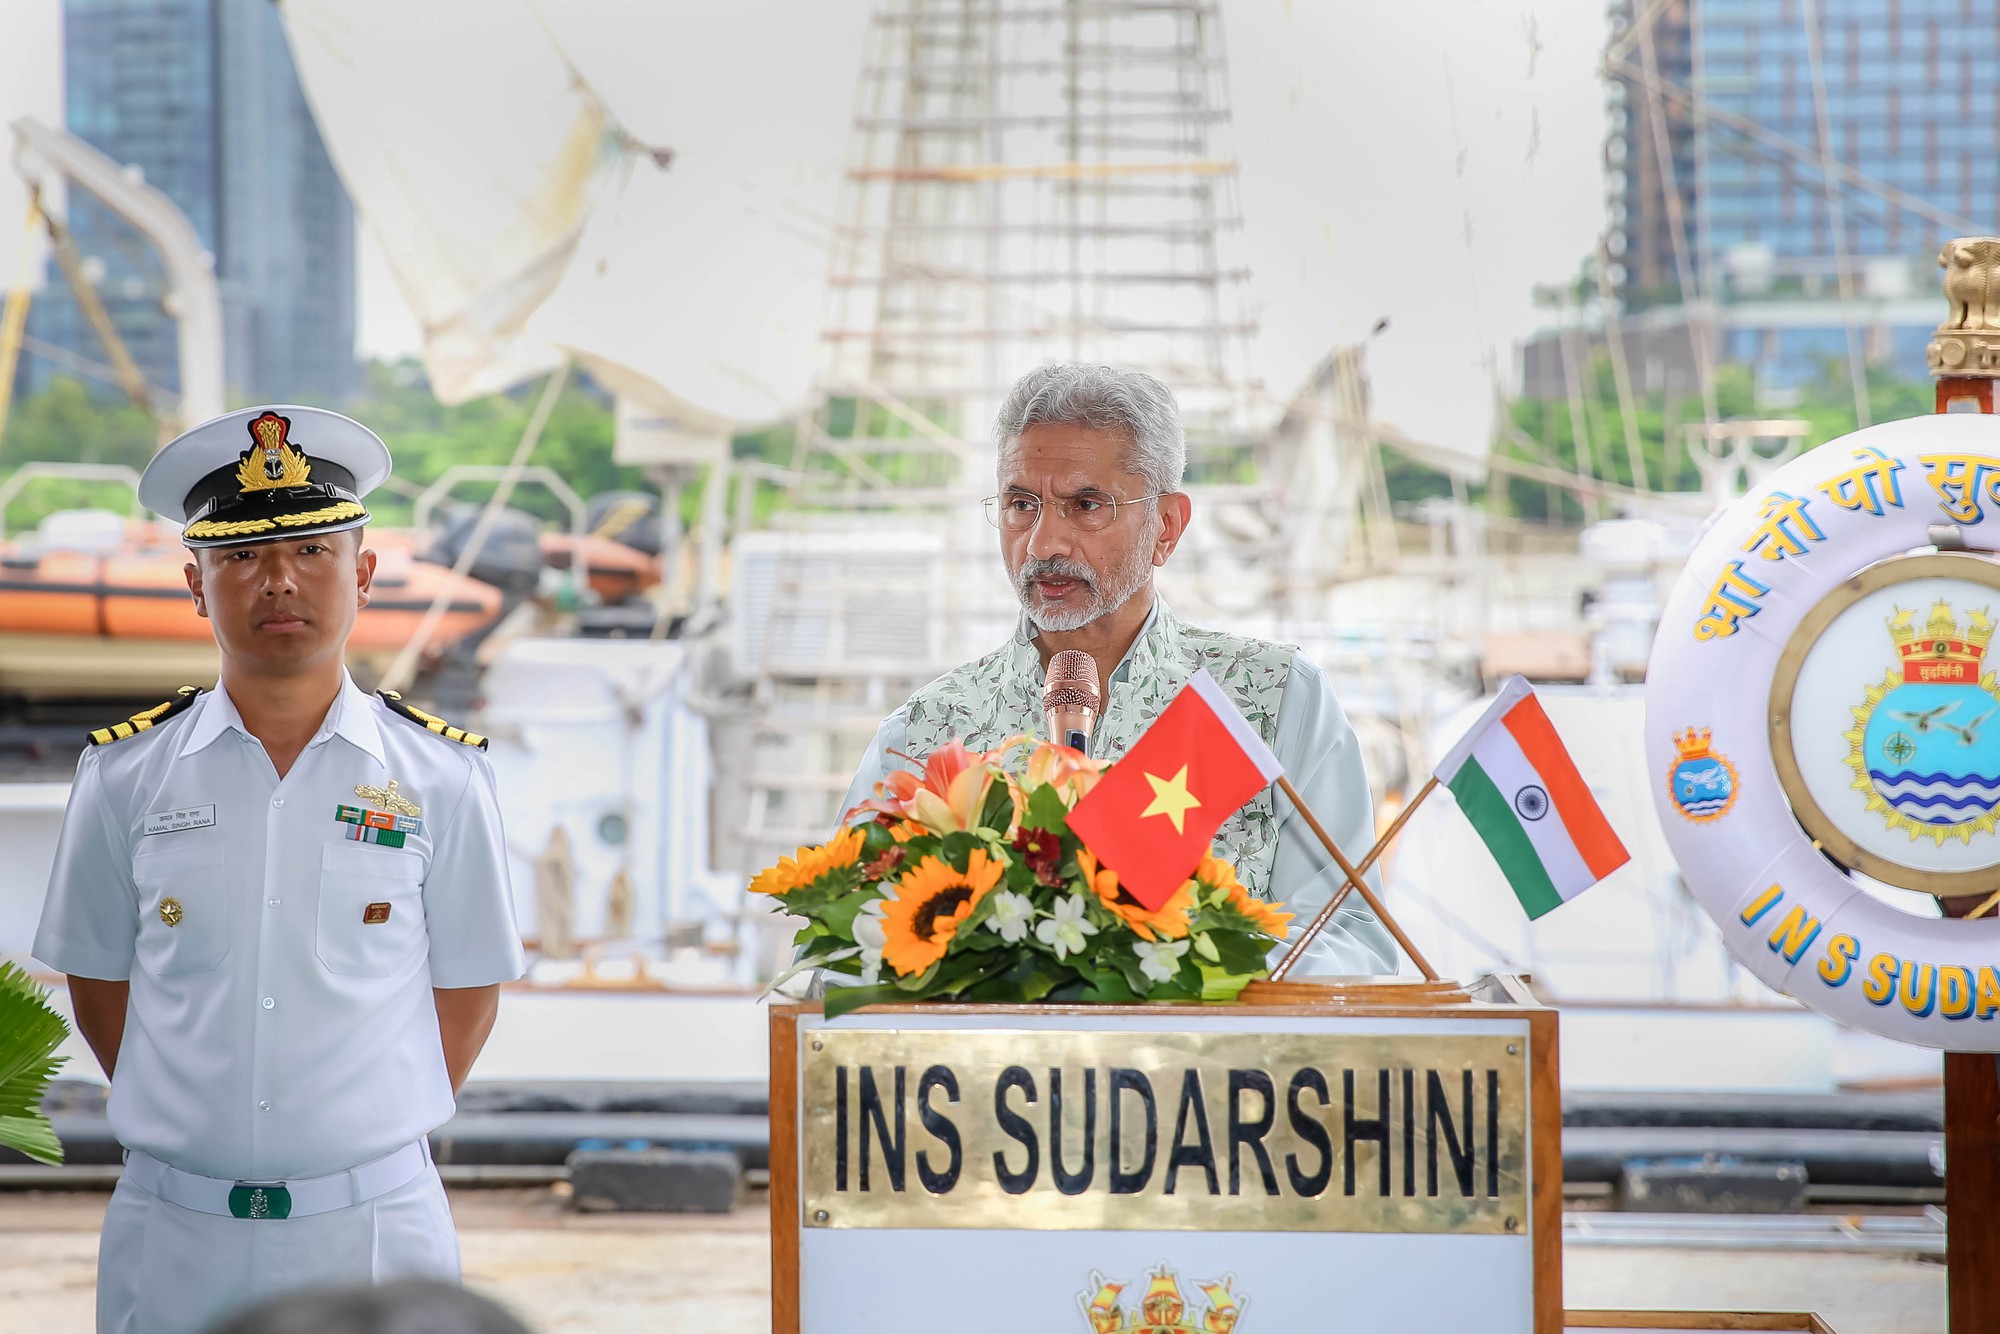 Tàu buồm Hải quân Ấn Độ Sudarshini thăm TP HCM - Ảnh 6.